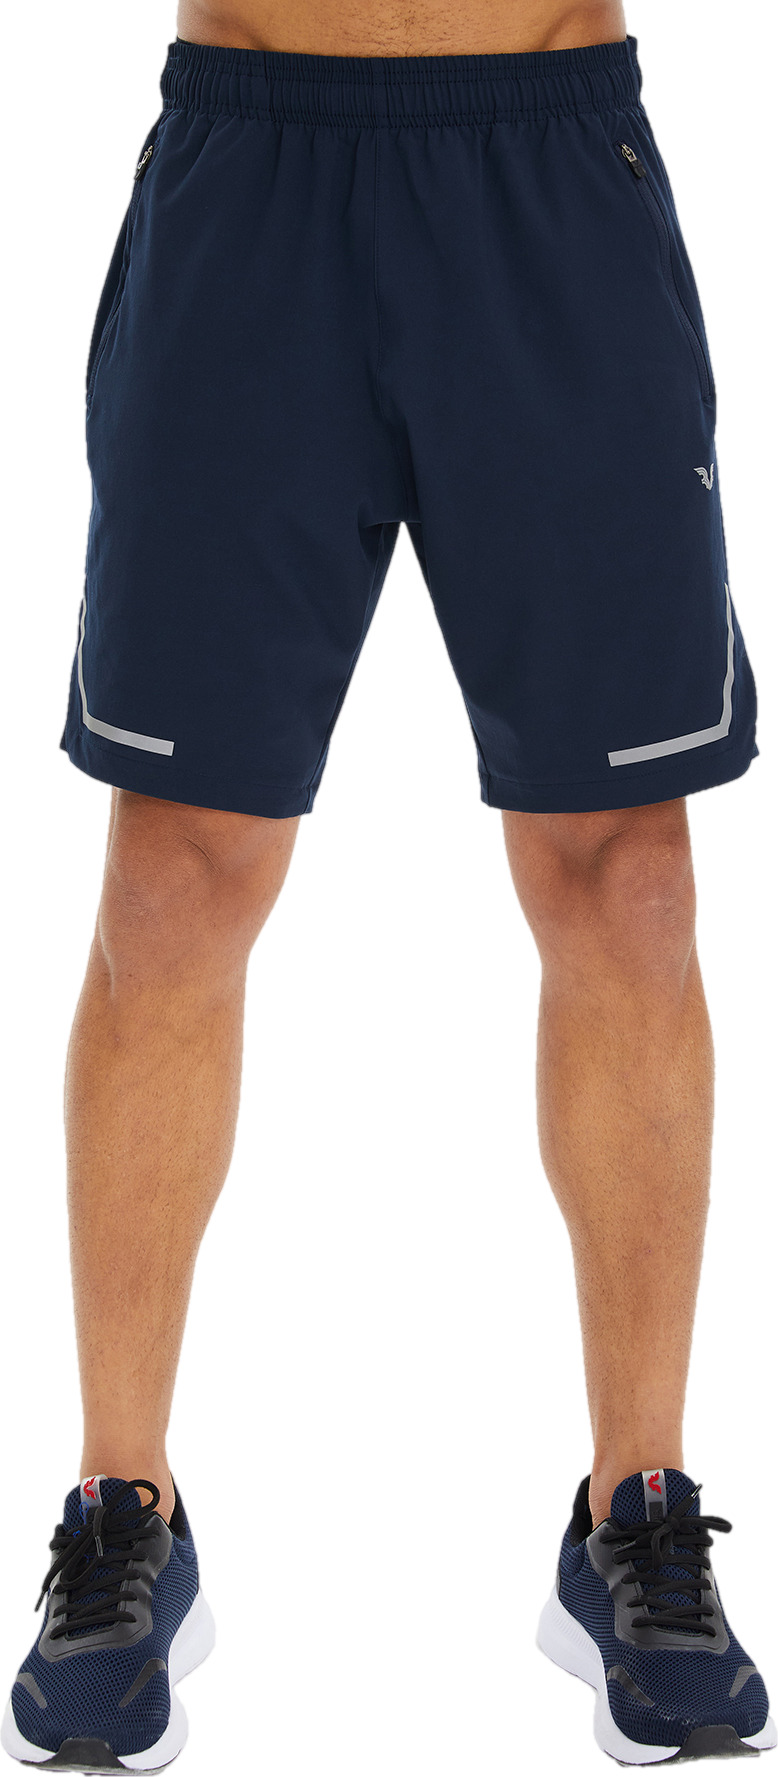 Спортивные шорты мужские Bilcee Men Woven Shorts синие S